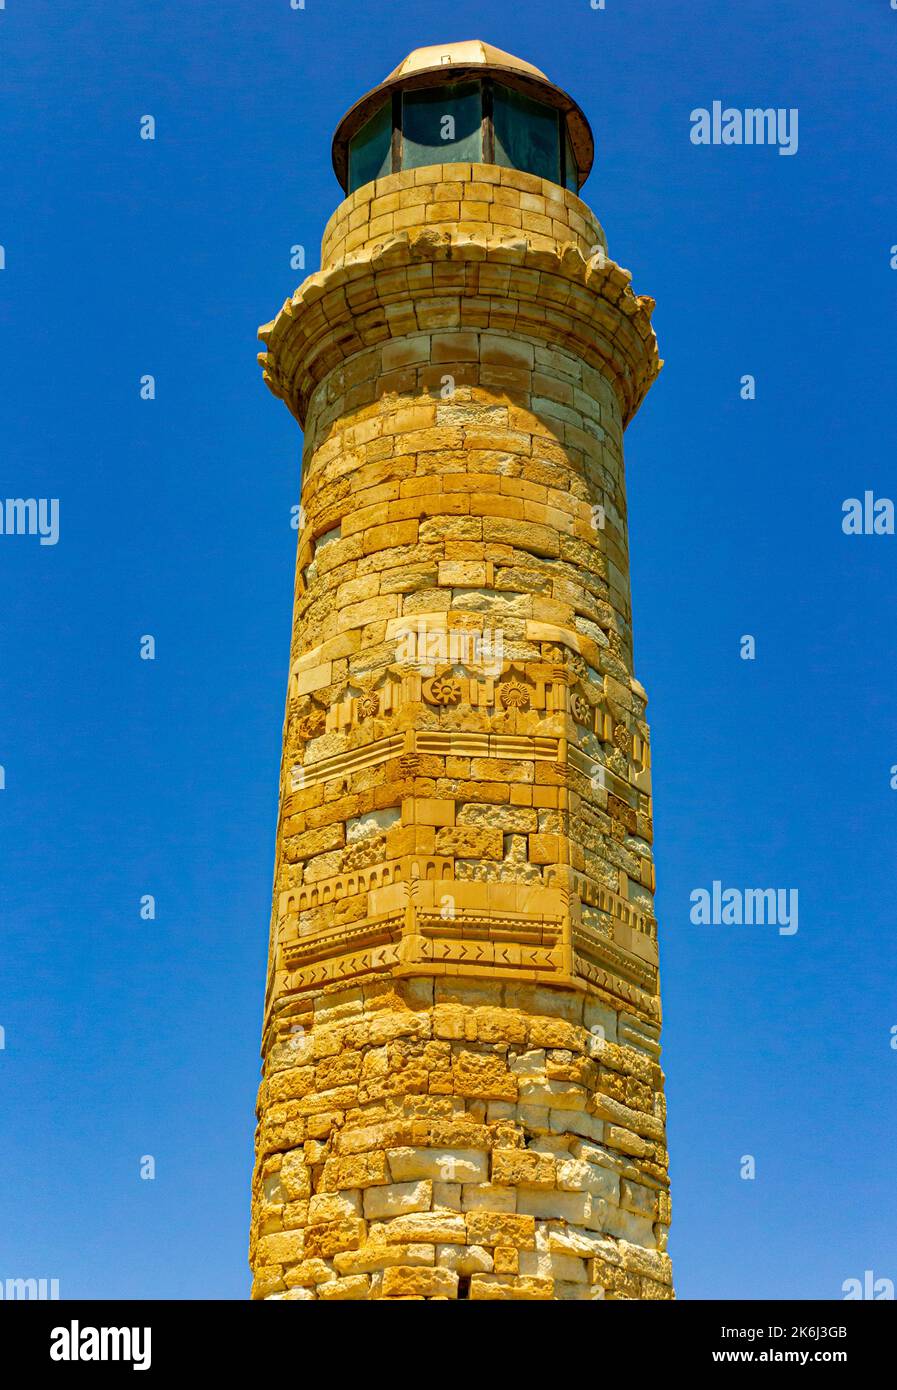 Le phare dans le vieux port à Rethymno ou Rethymnon une station balnéaire sur la côte nord de la Crète en Grèce. Banque D'Images